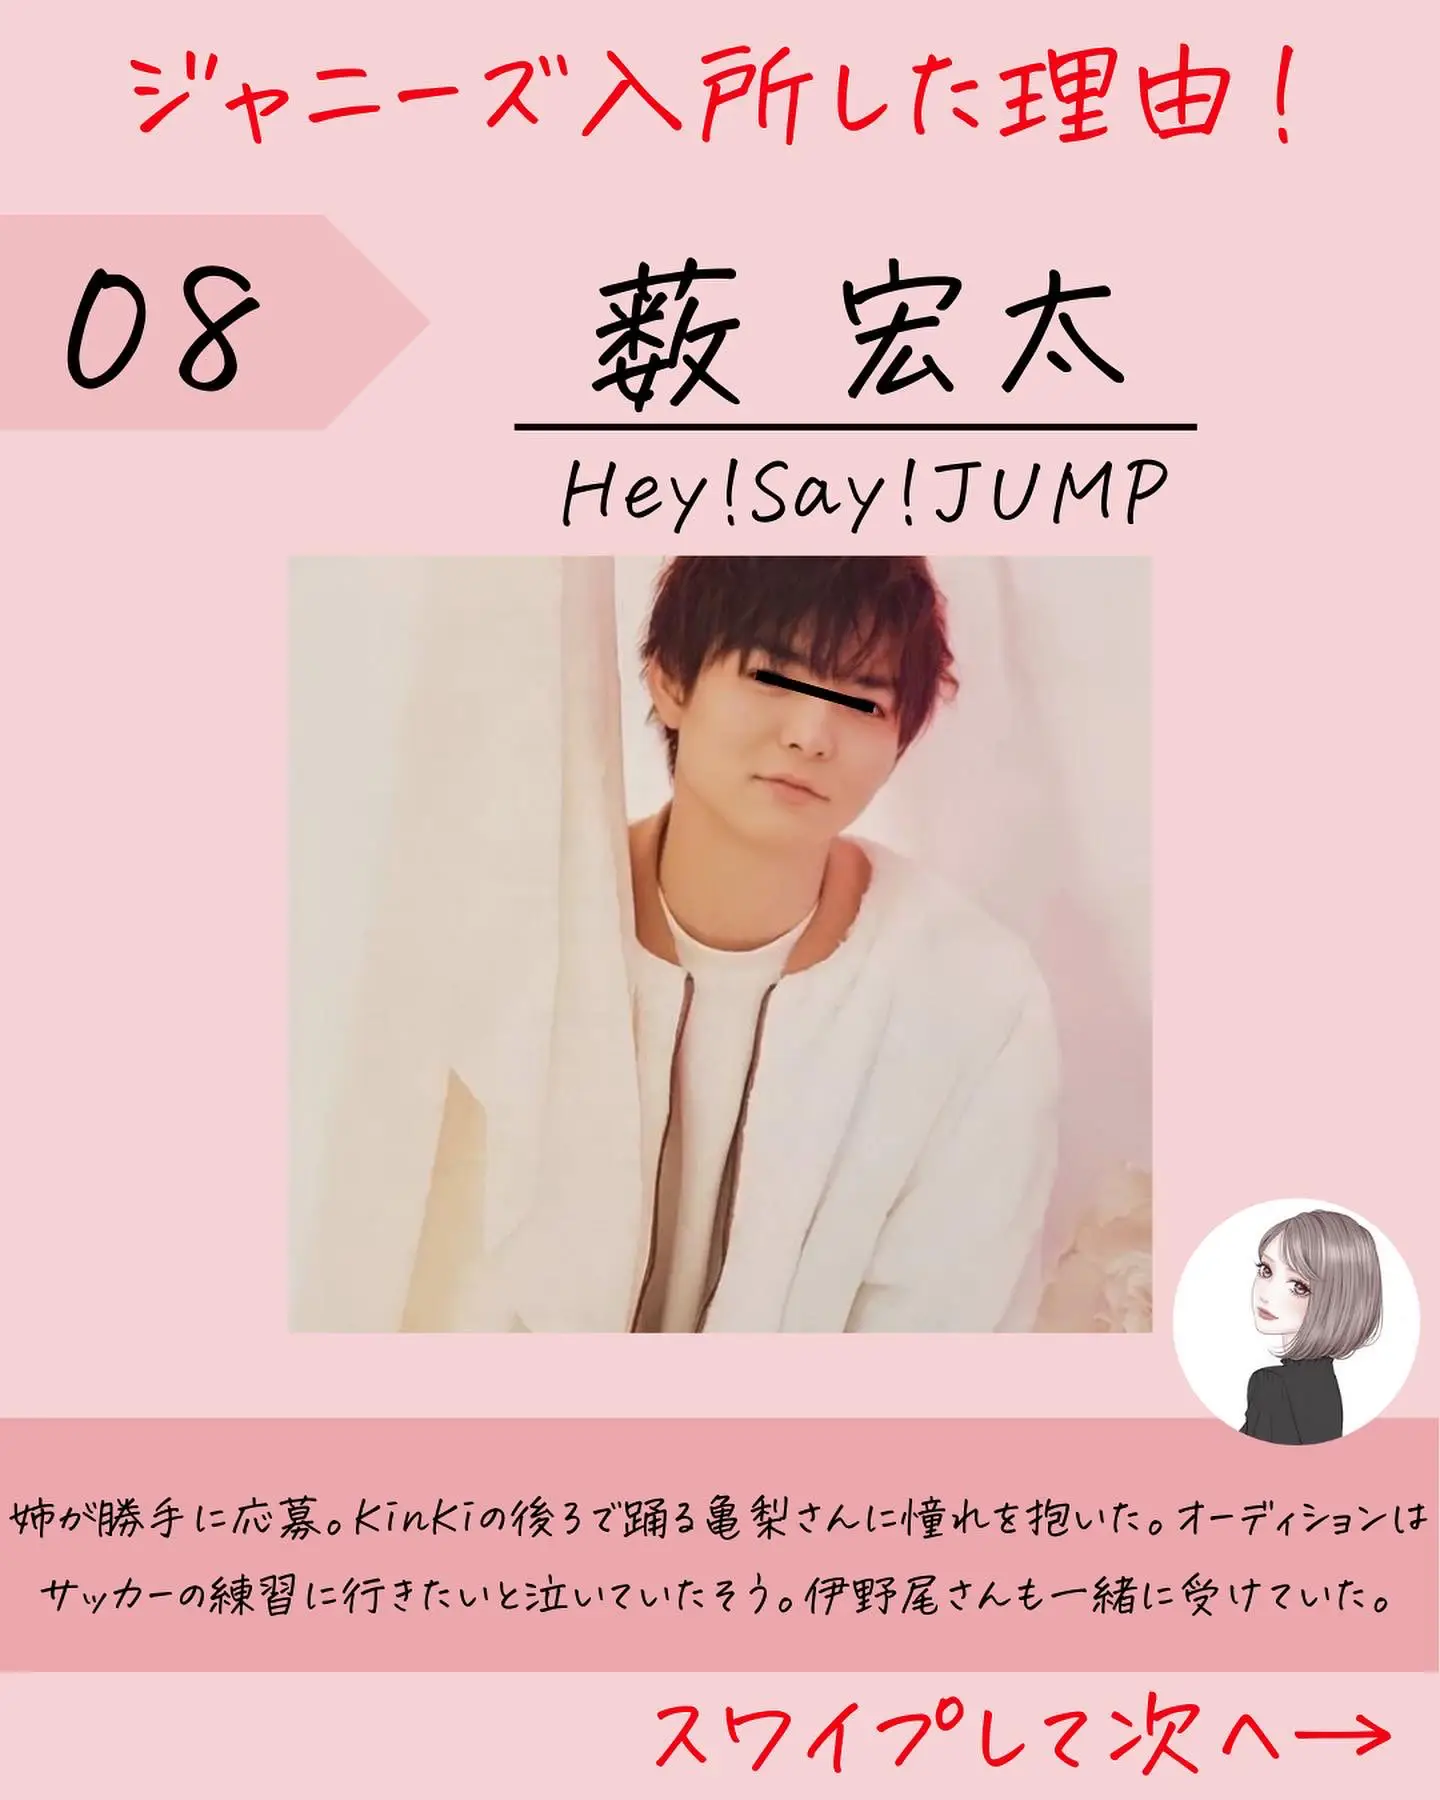 伊野尾慧 薮宏太 八乙女光 Jr.時代 公式写真 Hey!Say!JUMP - ゲーム ...